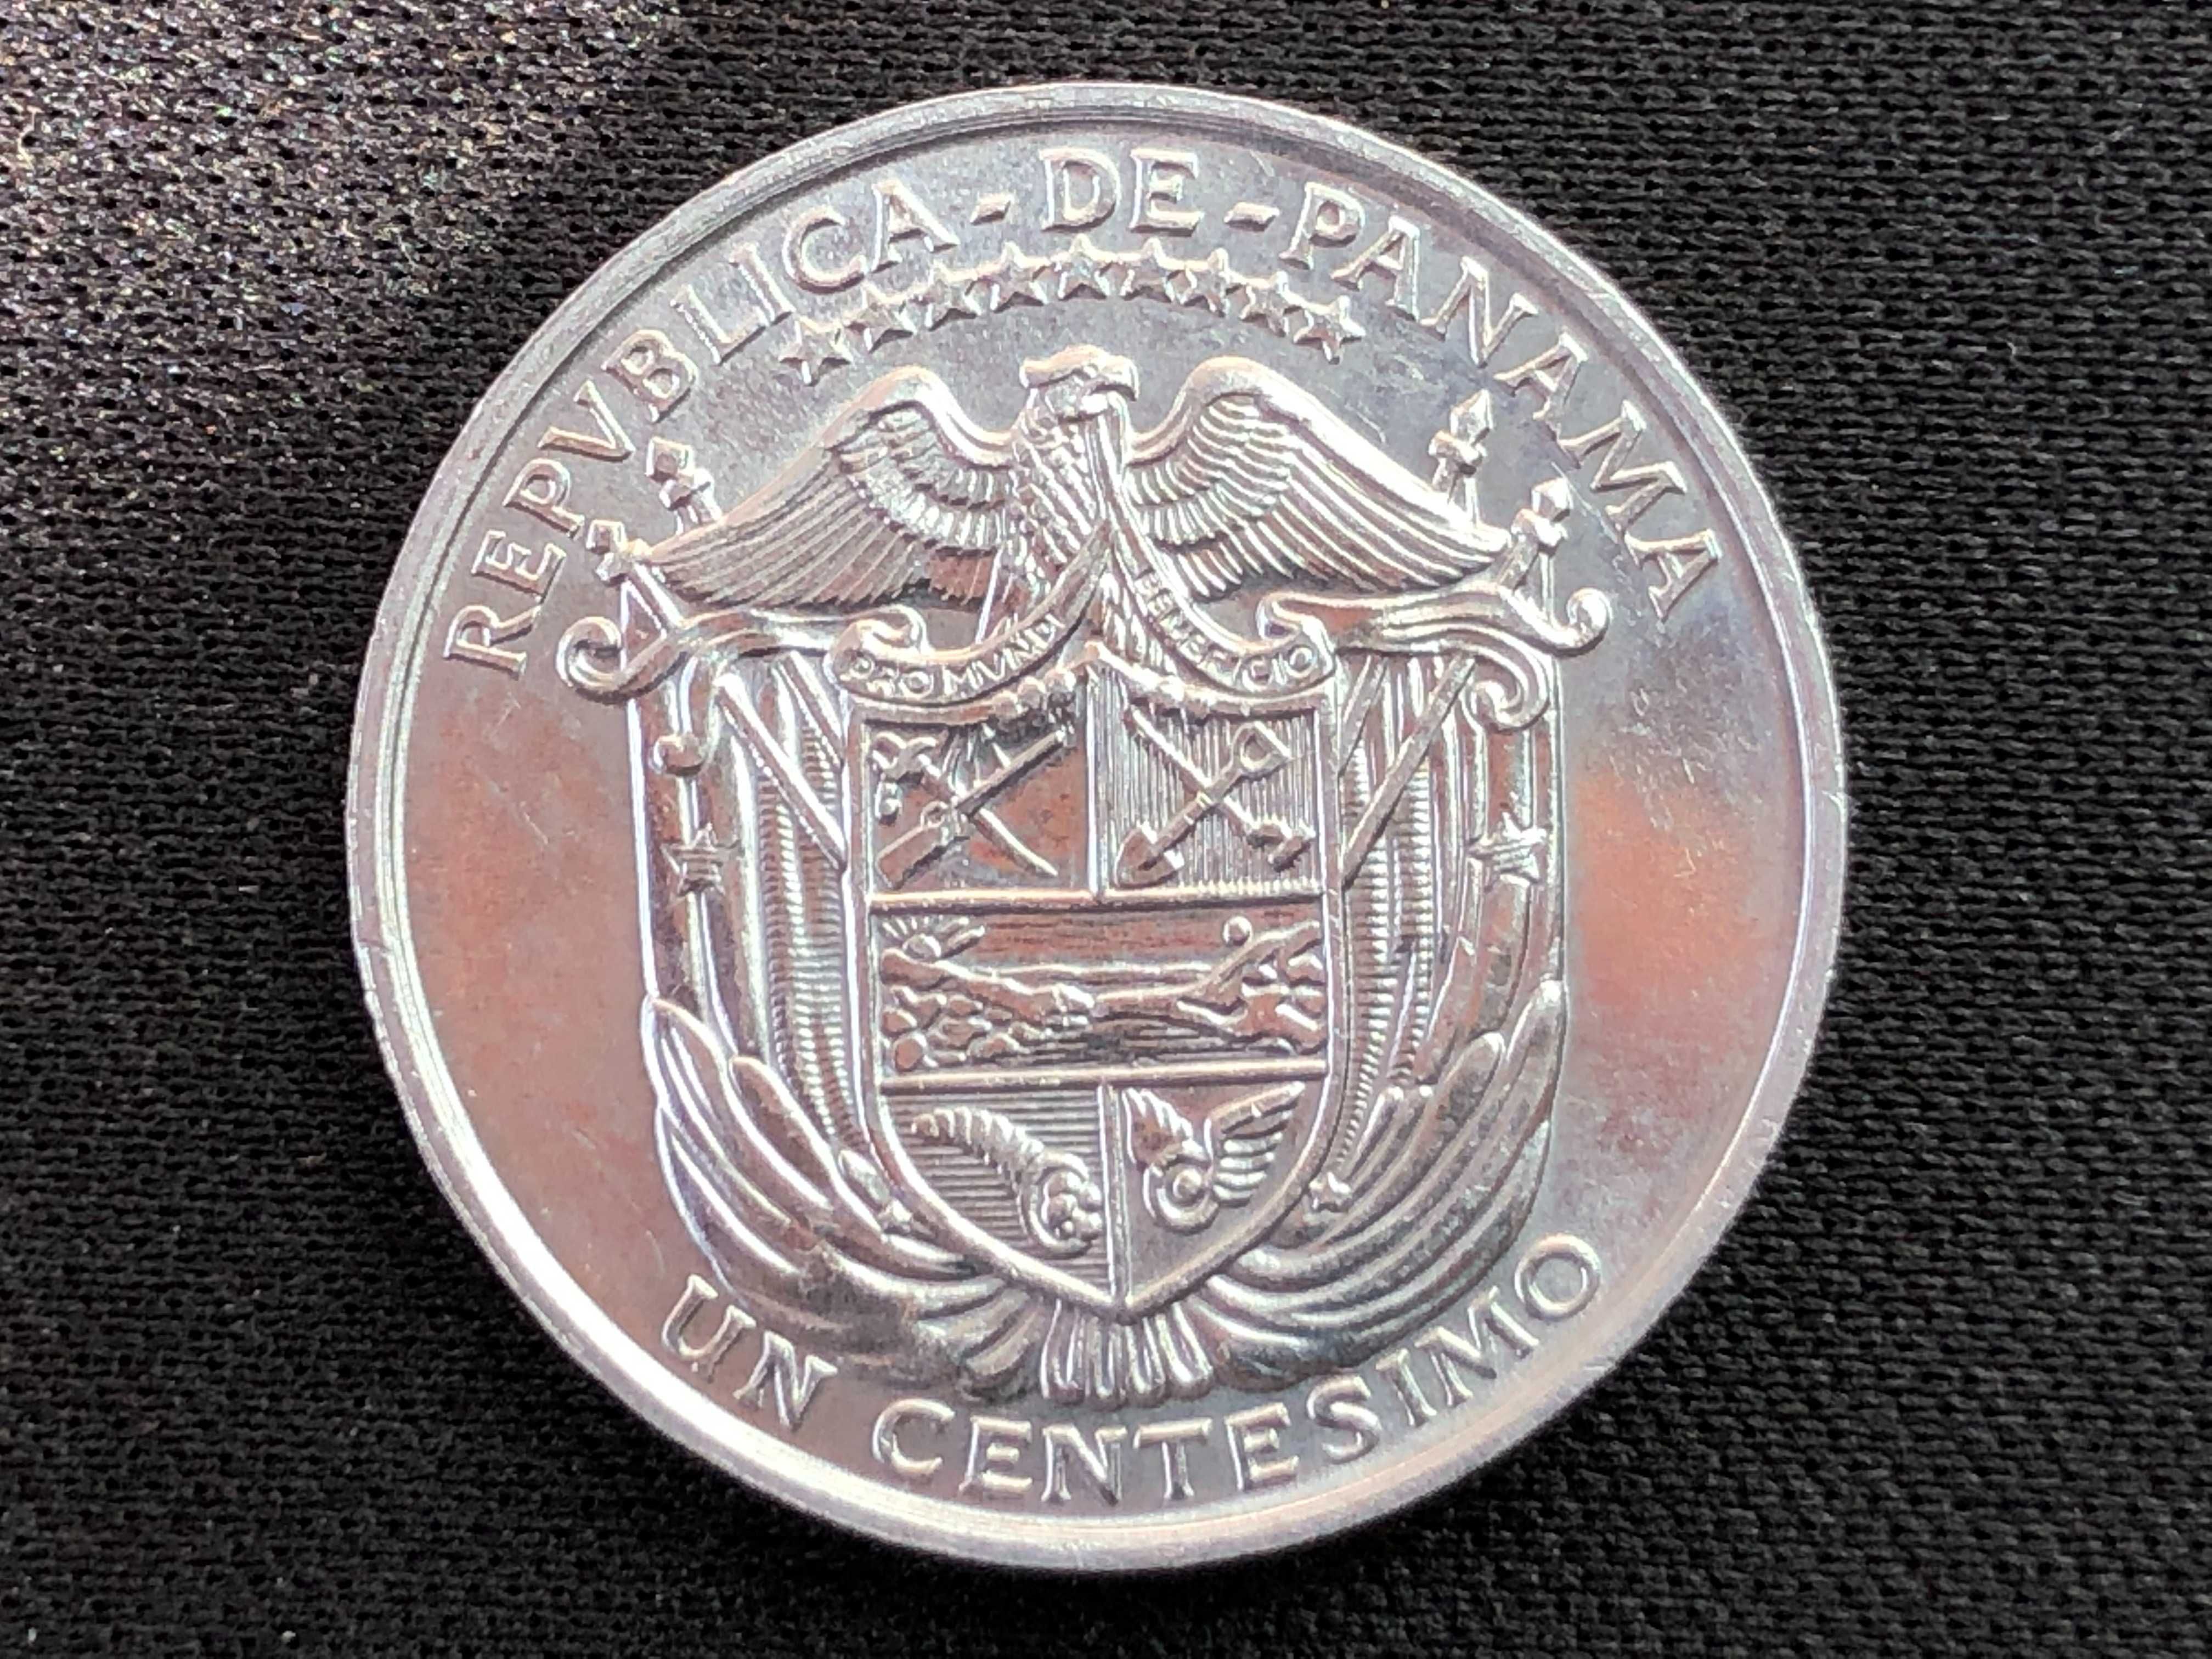 Lote de 2 moedas do Panamá - Moeda Centesimo